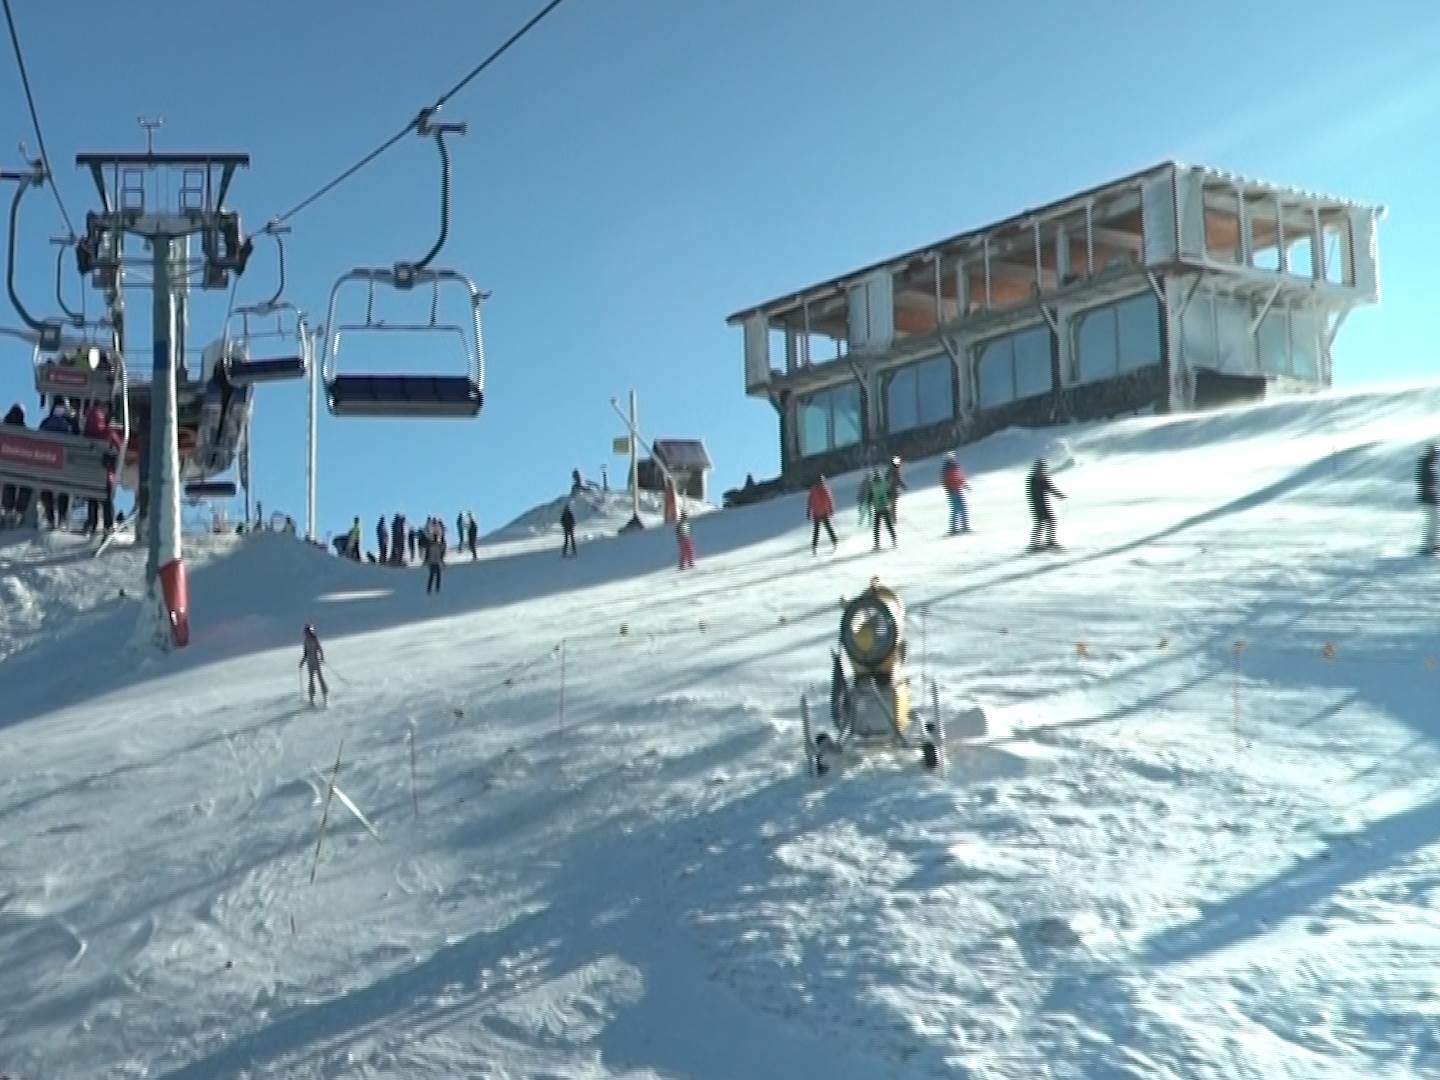  skijalista srbije cene ski pasa gde na skijanje kopaonik zlatibor goc golija crni vrh tara 